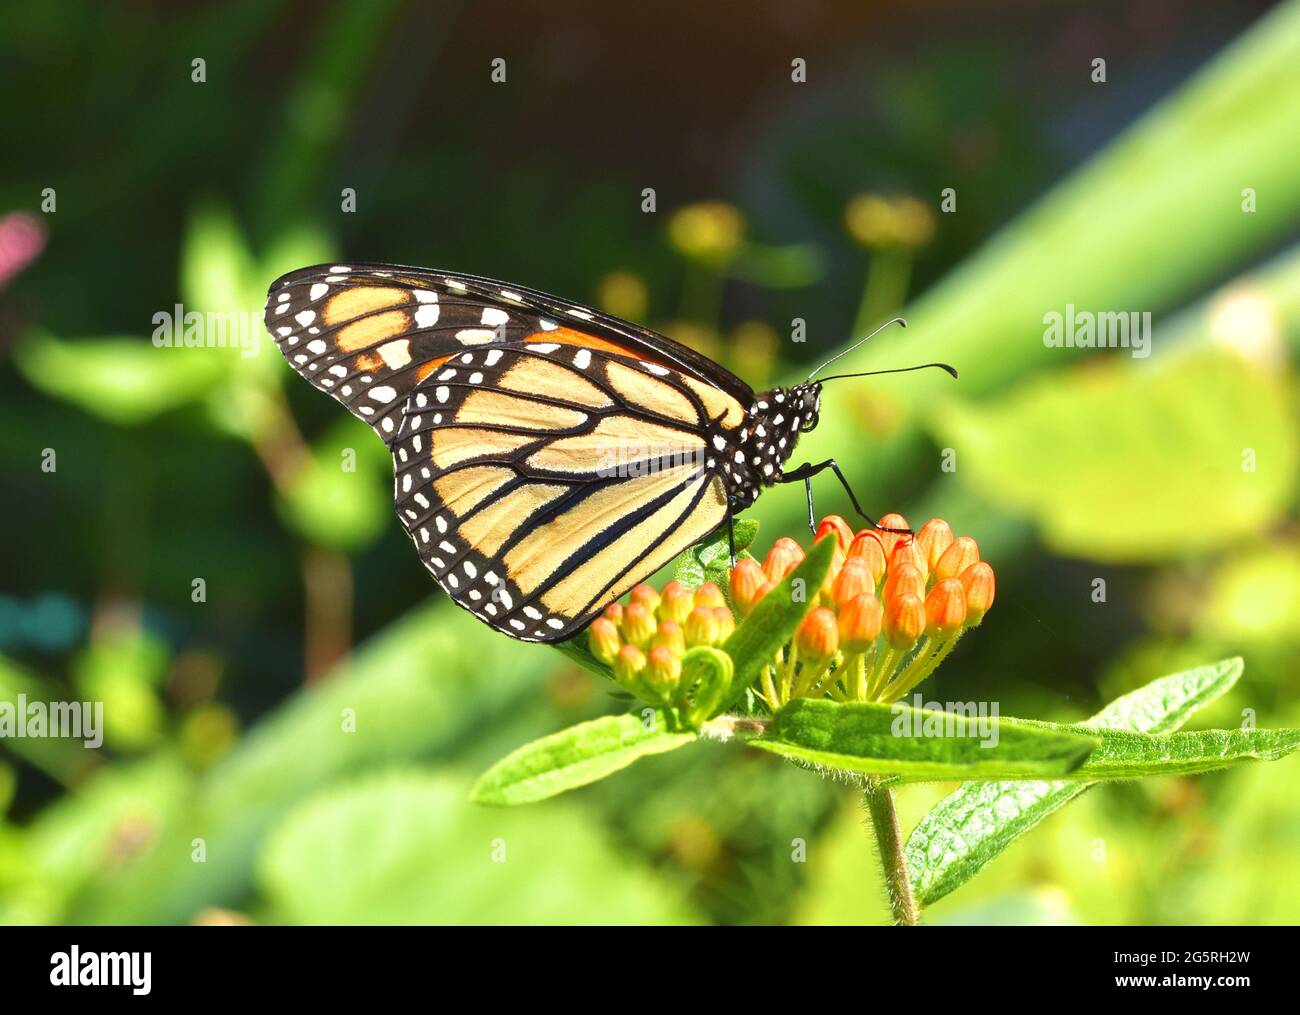 Una mariposa monarca (Danaus plexippus) descansando sobre las yemas de flores anaranjadas de la maleza de la mariposa (Asclepias tuberosa). Espacio de copia. Primer plano. Foto de stock